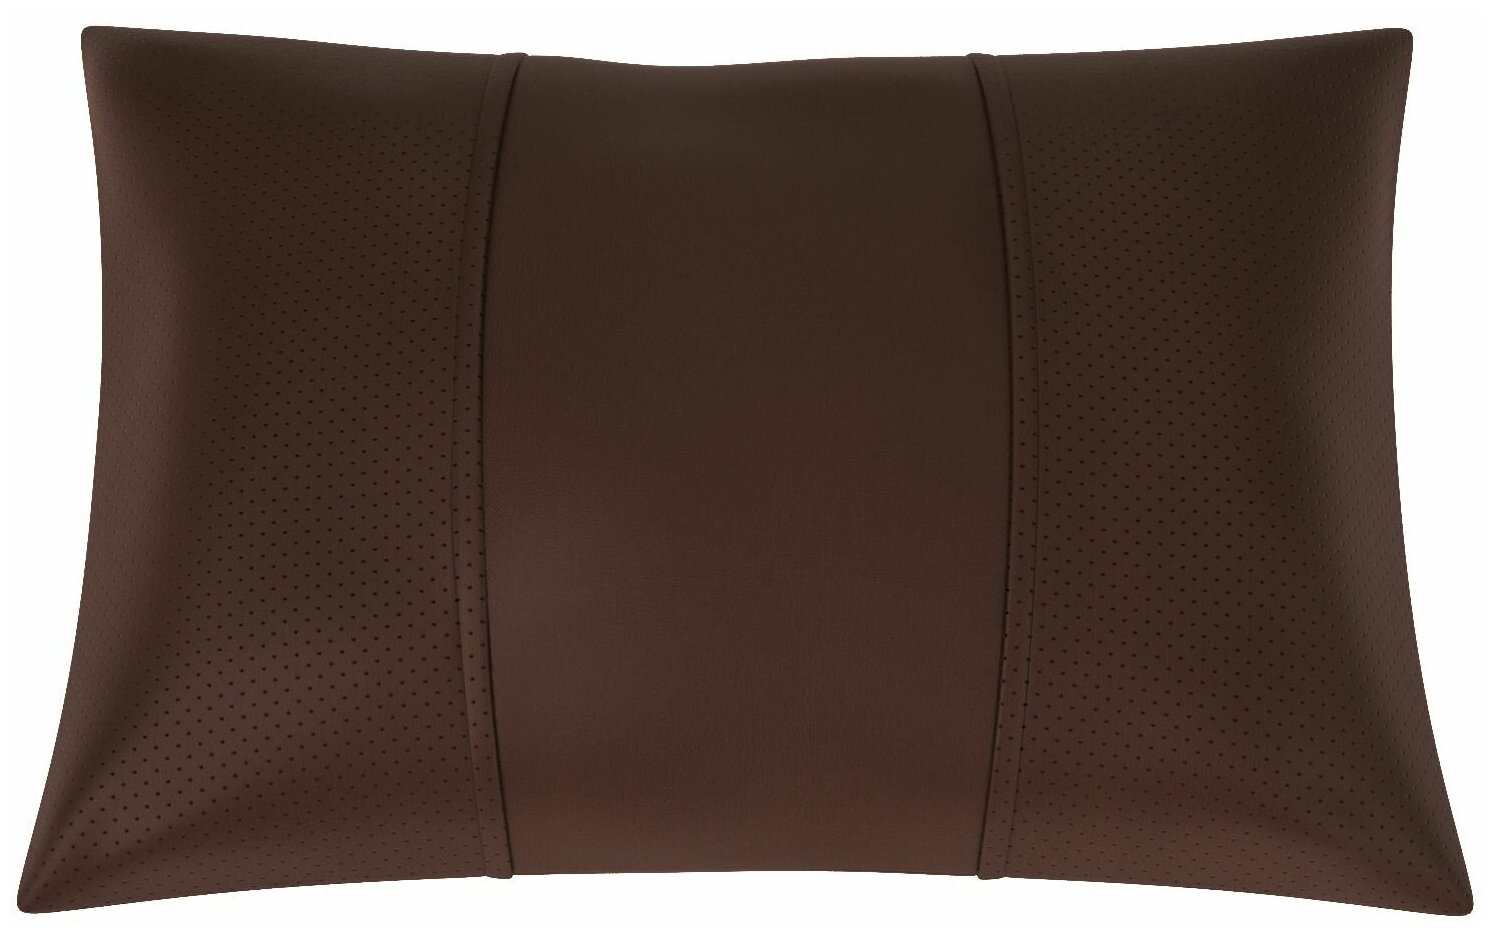 Автомобильная подушка для Citroen C5 2 (Ситроен С5 2). Экокожа. Середина: шоколад гладкая экокожа. Боковины: шоколад экокожа с перфорацией. 1 шт.